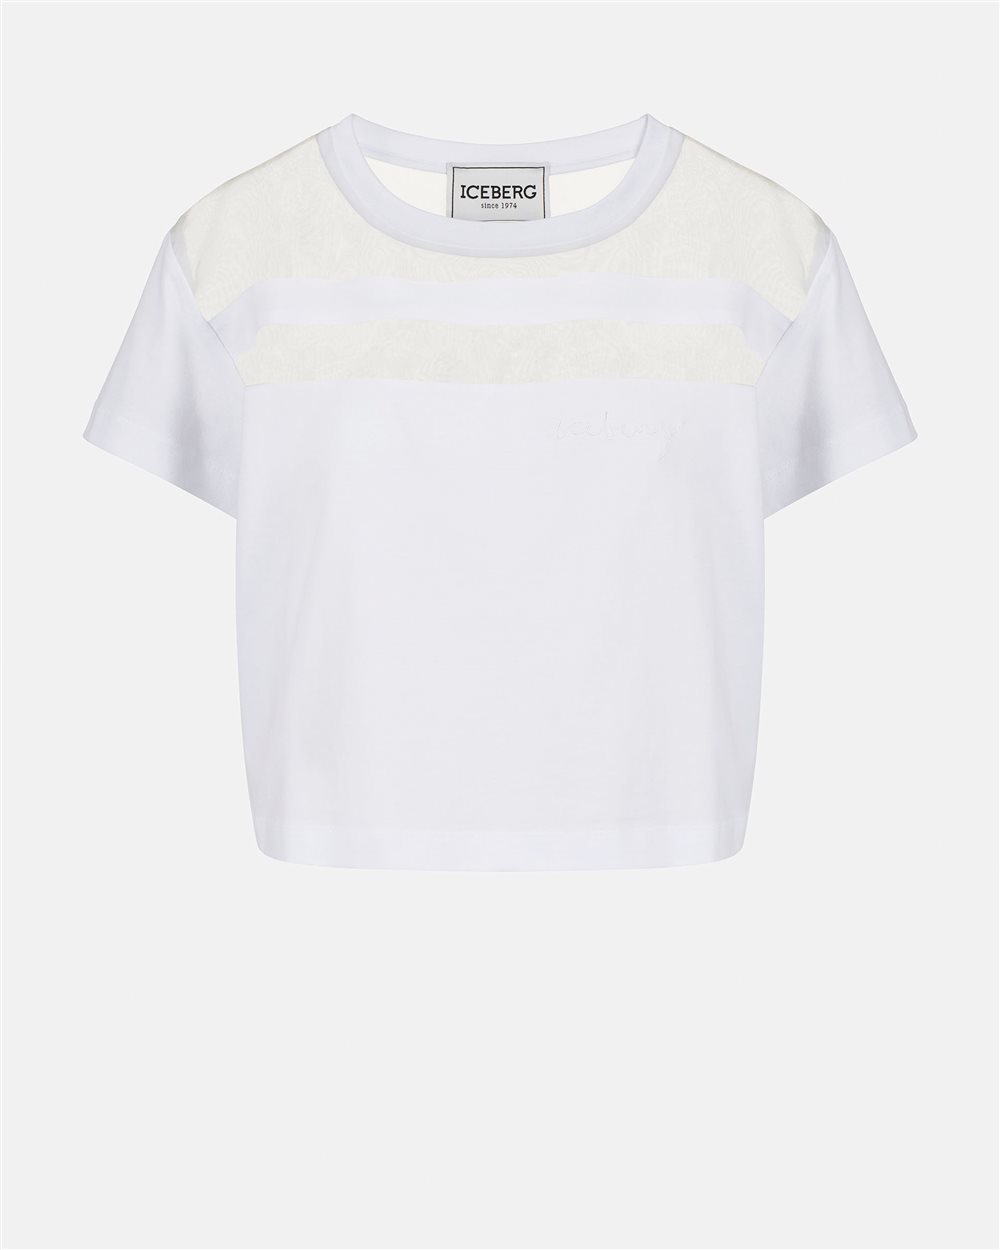 T-shirt in cotone e organza - Iceberg - Official Website